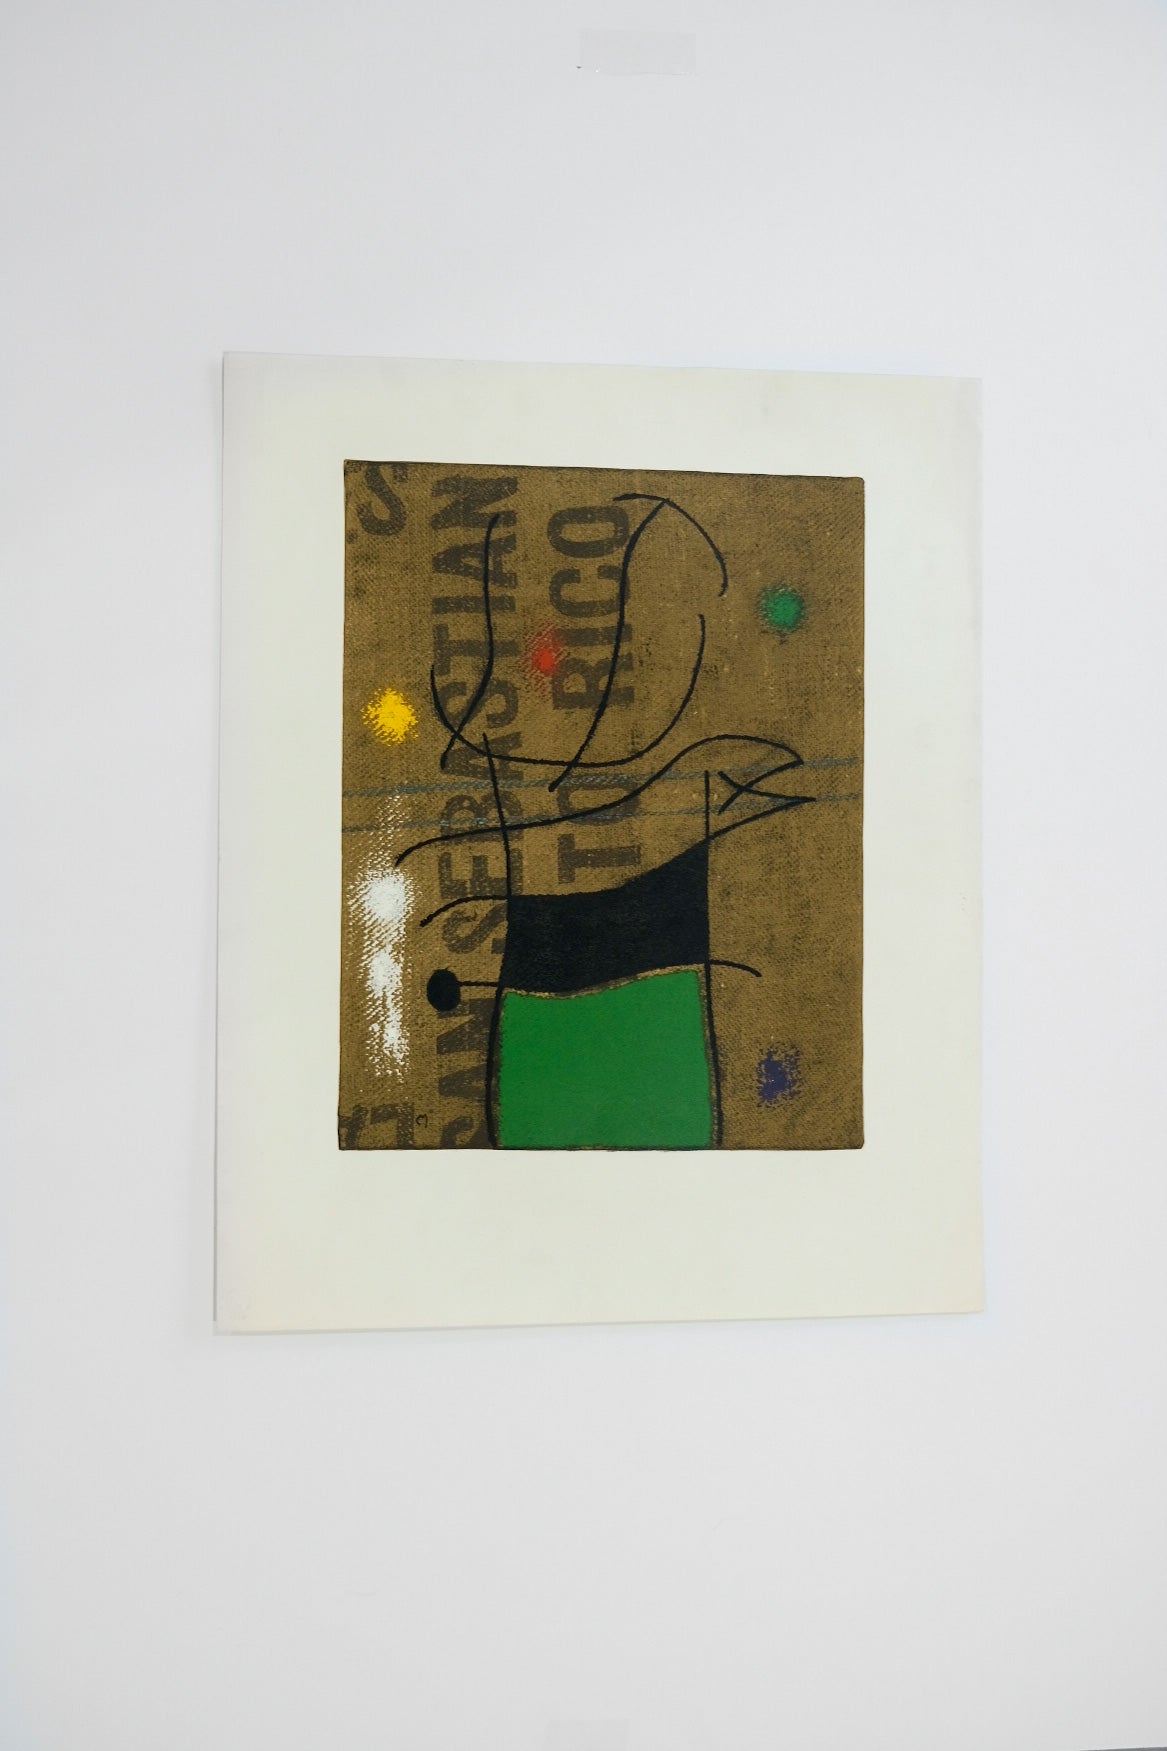 Joan Miro "FEMME ET OISEAU" IV/X plate #17